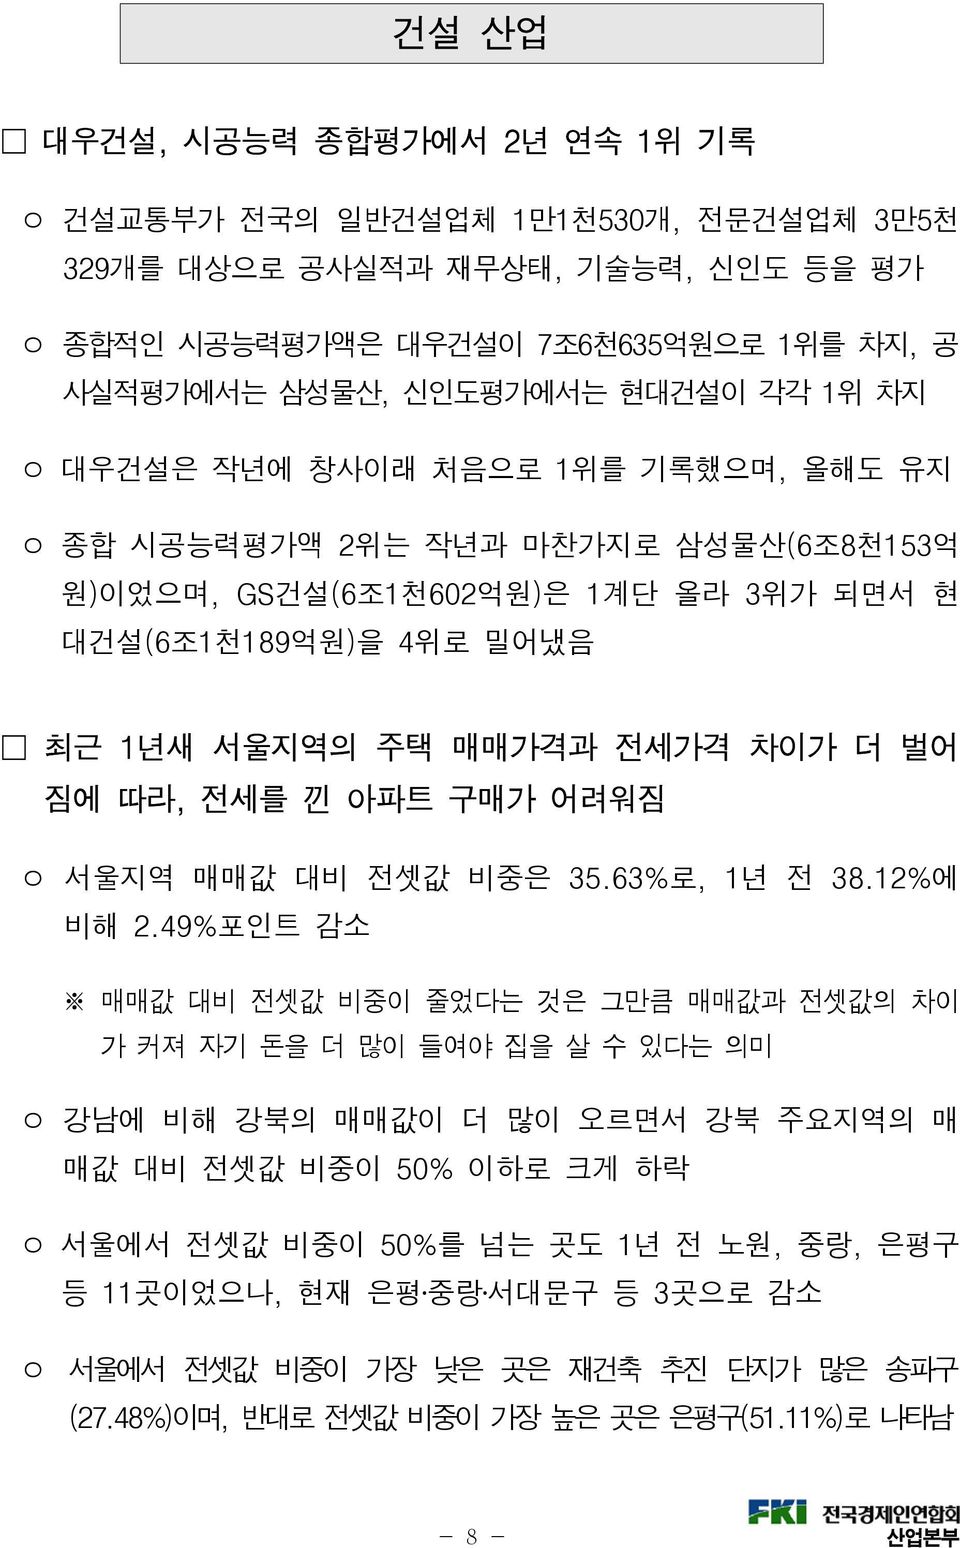 전세를 낀 아파트 구매가 어려워짐 ㅇ 서울지역 매매값 대비 전셋값 비중은 35.63%로, 1년 전 38.12%에 비해 2.